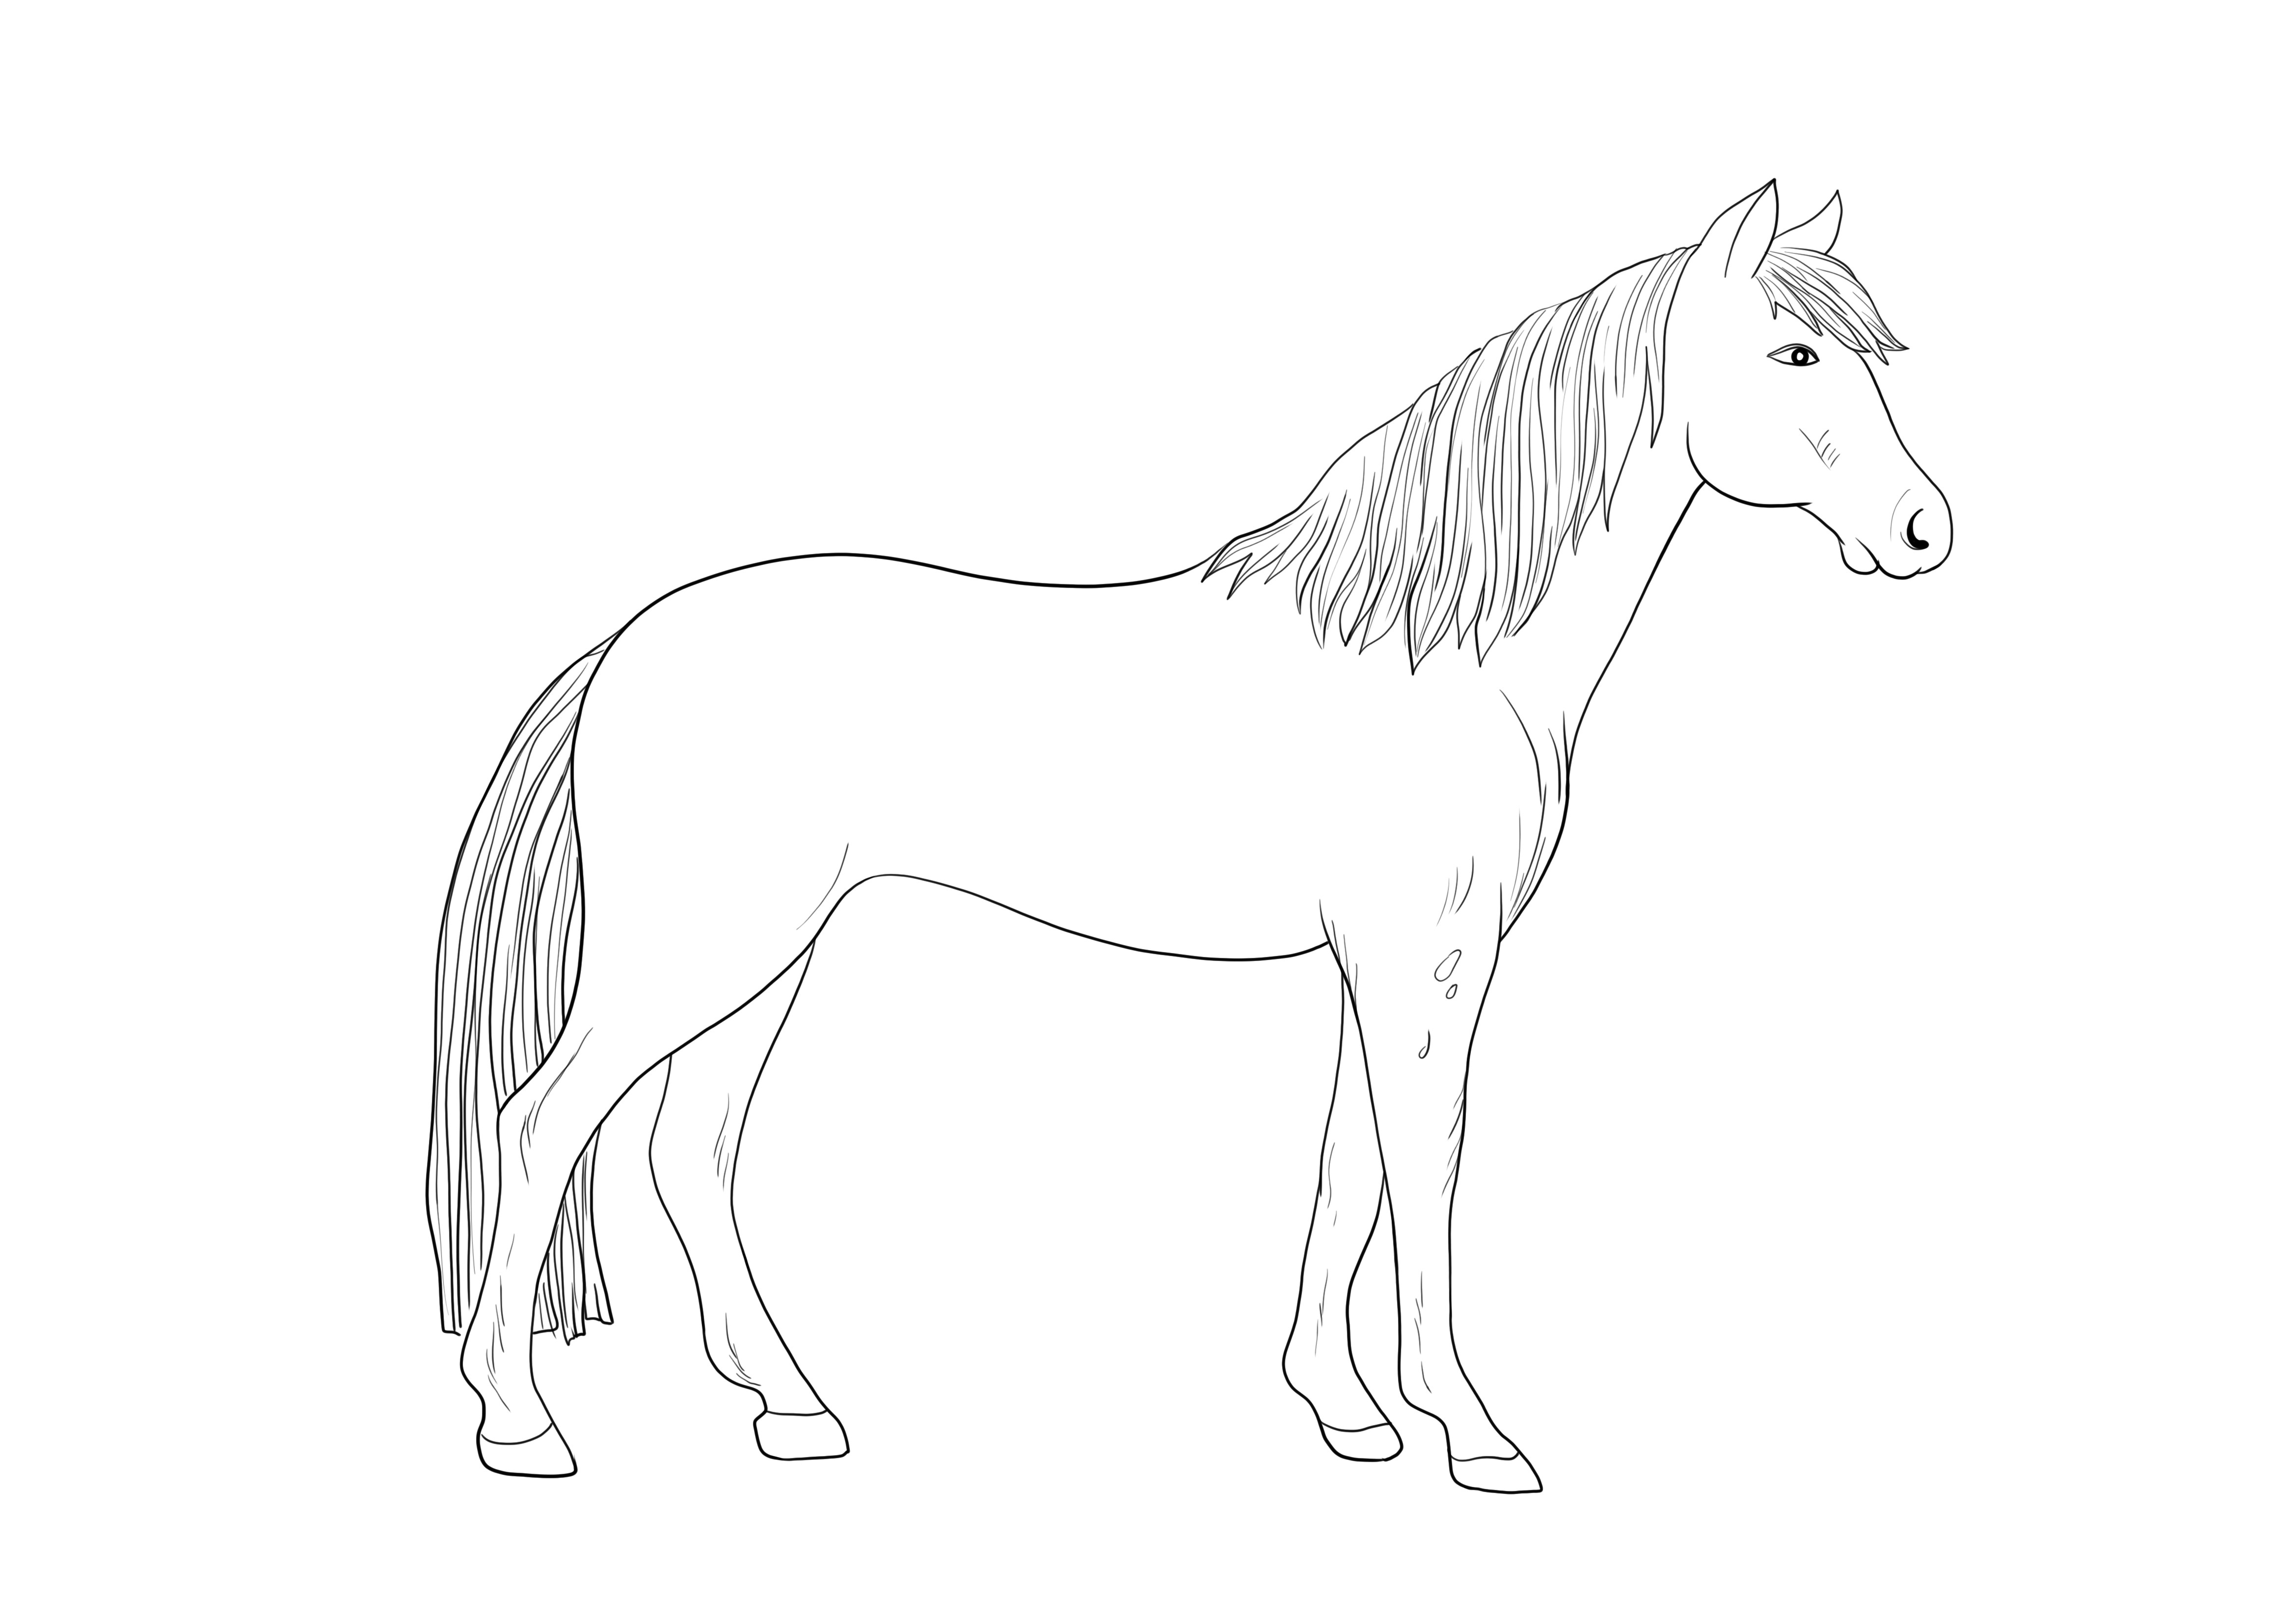 Bellissimo cavallo Appaloosa pronto per la stampa per un'immagine gratuita